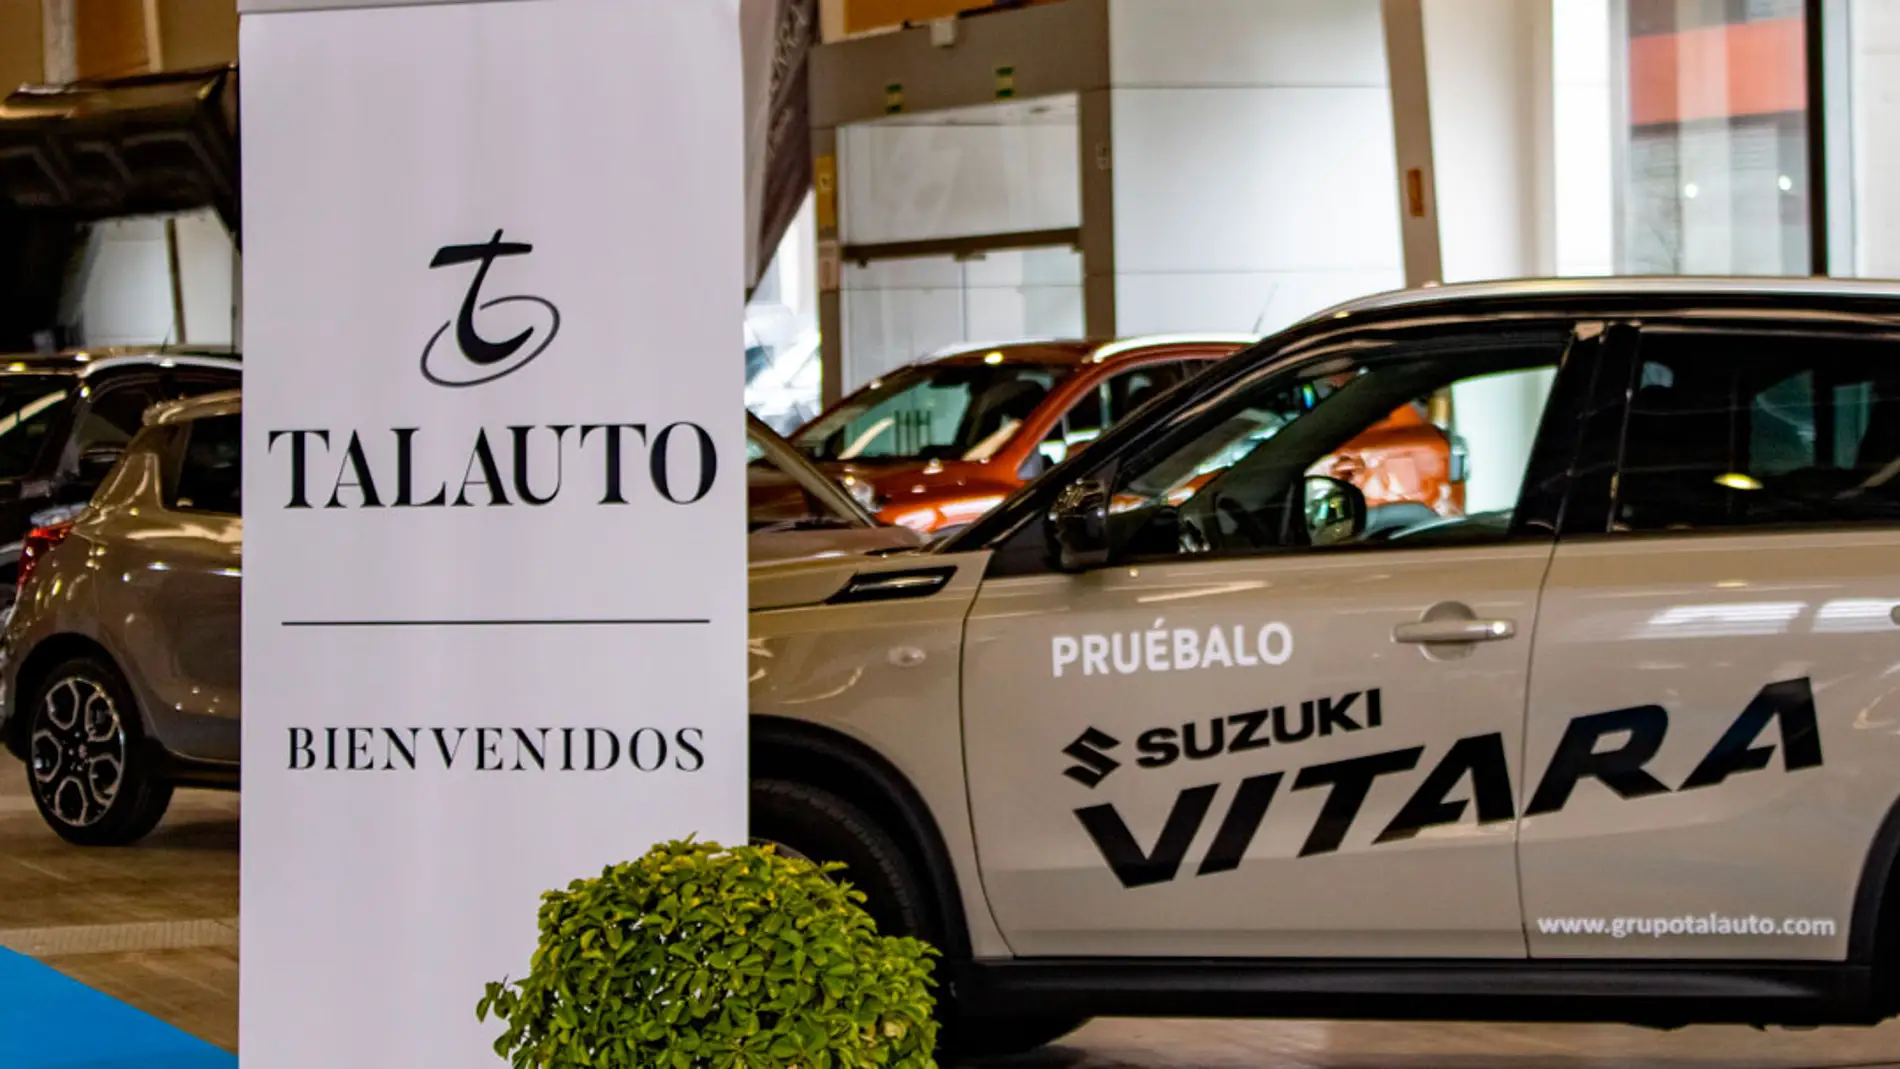 Talauto lidera la venta de vehículos nuevos y de ocasión tras la clausura del XIII Salón del Automóvil